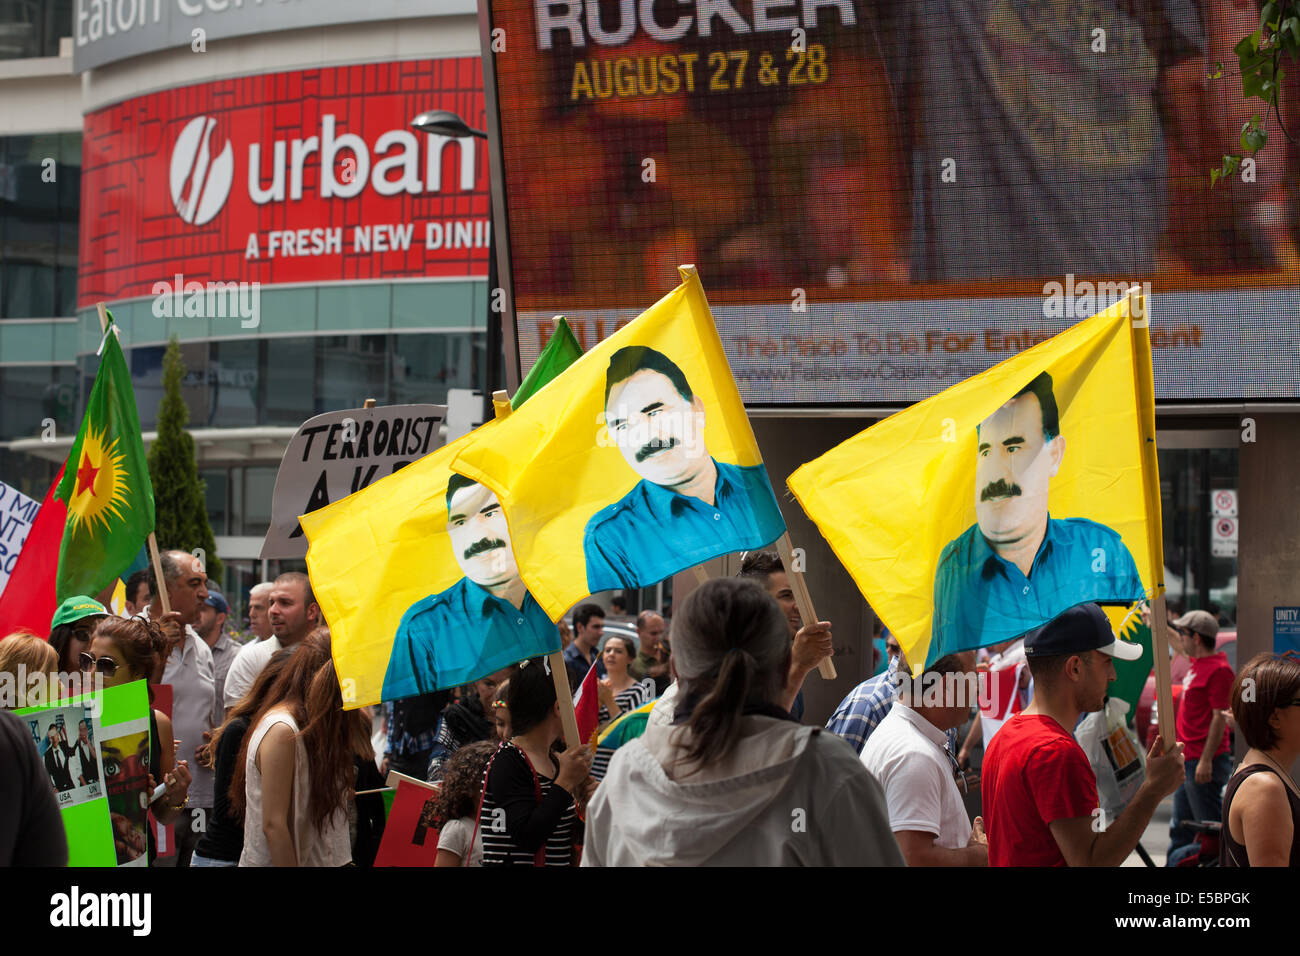 Toronto, Canada. 26 juillet, 2014. Les Canadiens pour protester contre les Kurdes en Turquie à l'ISIS et Yonge-Dundas Square , le 26 juillet 2014 à Toronto, Canada. Crédit : Igor kisselev/Alamy Live News Banque D'Images